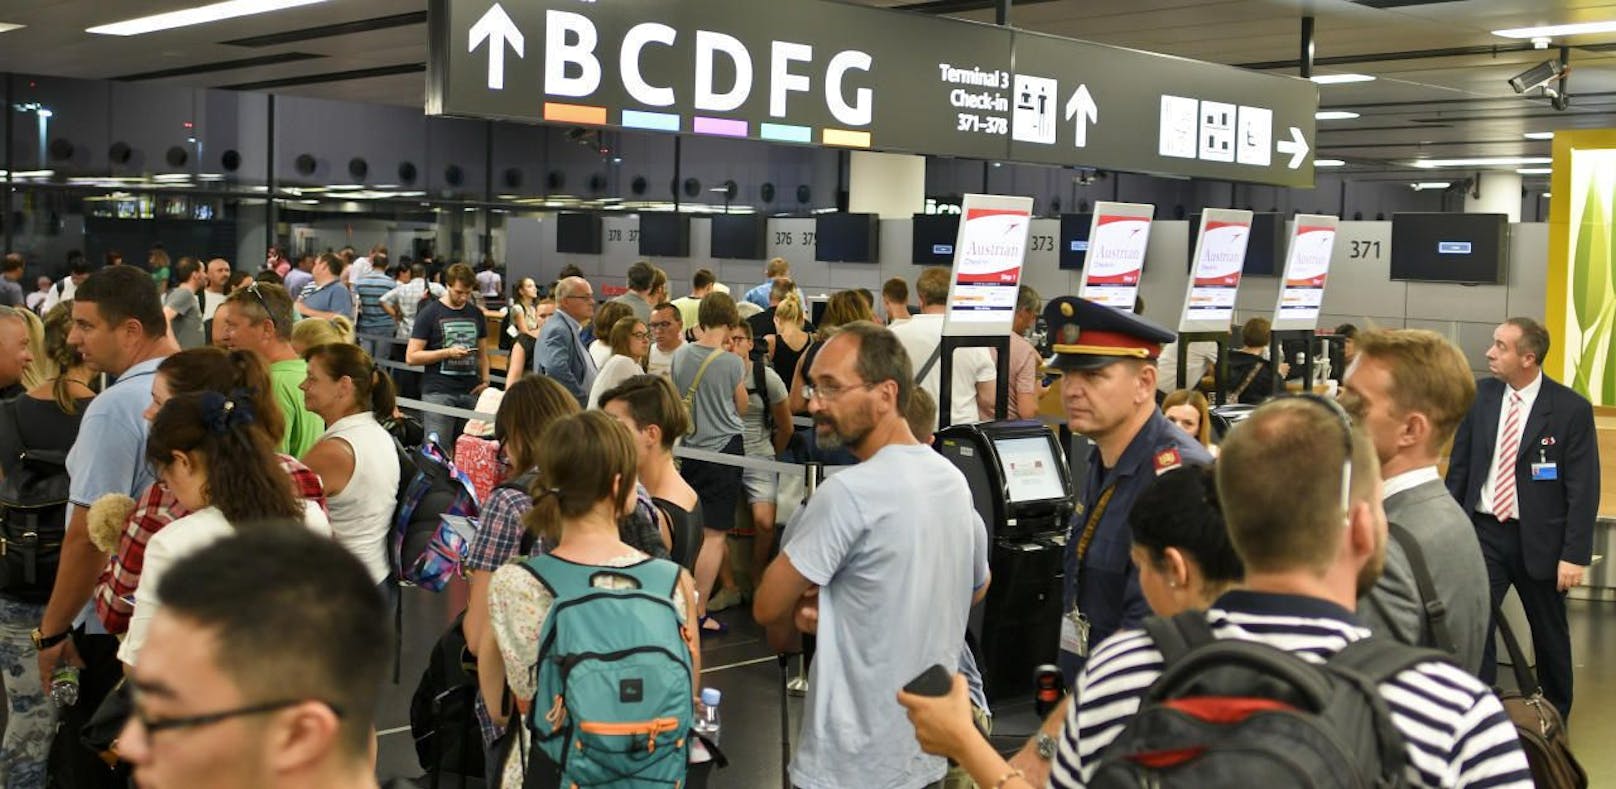 Wegen technischer Probleme fielen am Flughafen Wien-Schwechat dutzende Flüge aus oder waren stark verspätet. 